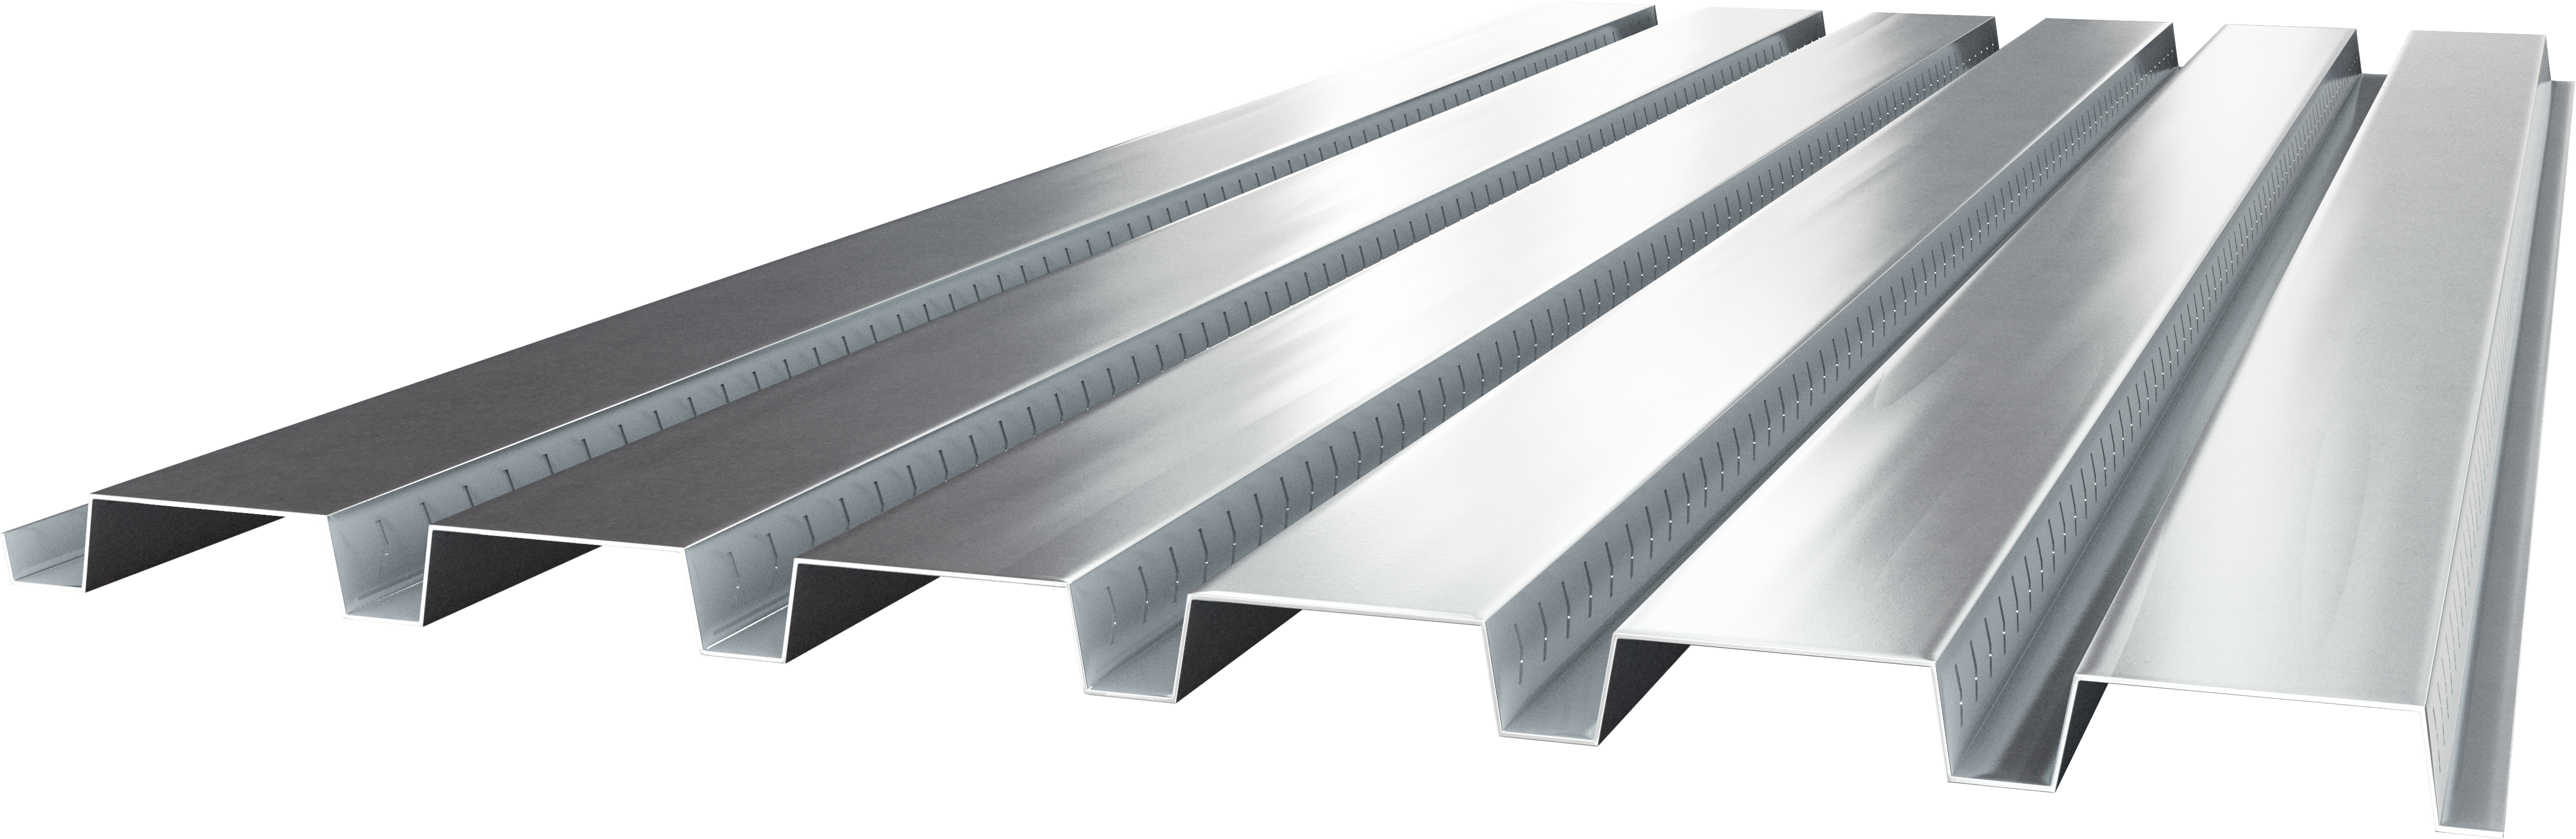 Cordeck Composite Metal Floor Deck Products